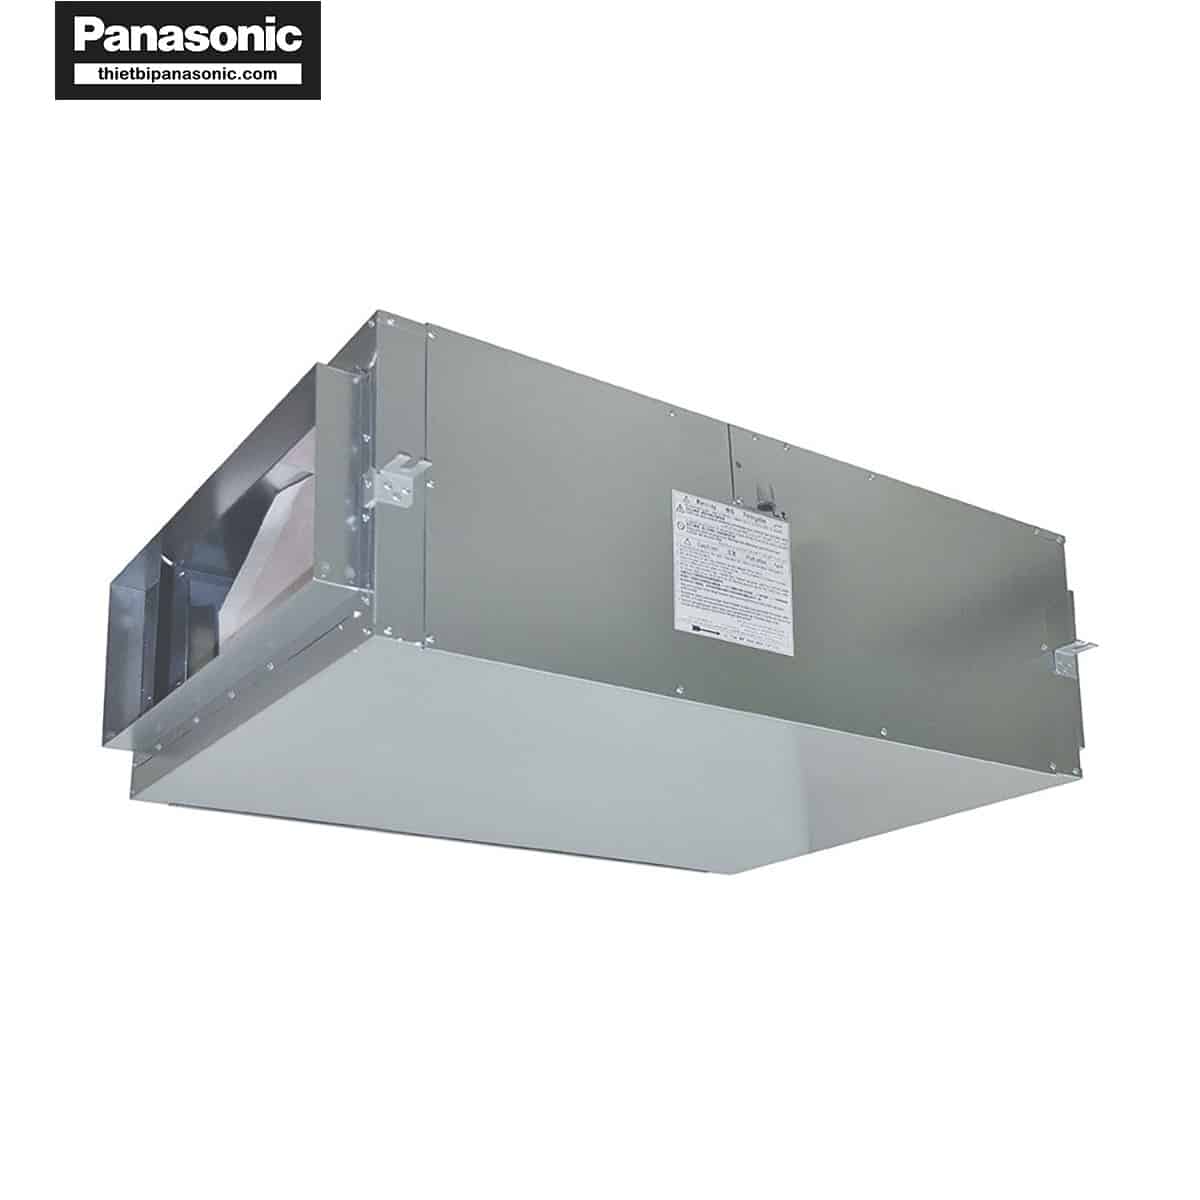 Quạt hút công nghiệp 3 pha Panasonic FV-25SM3 được làm từ kim loại cao cấp cho khả năng vận hành bền bỉ